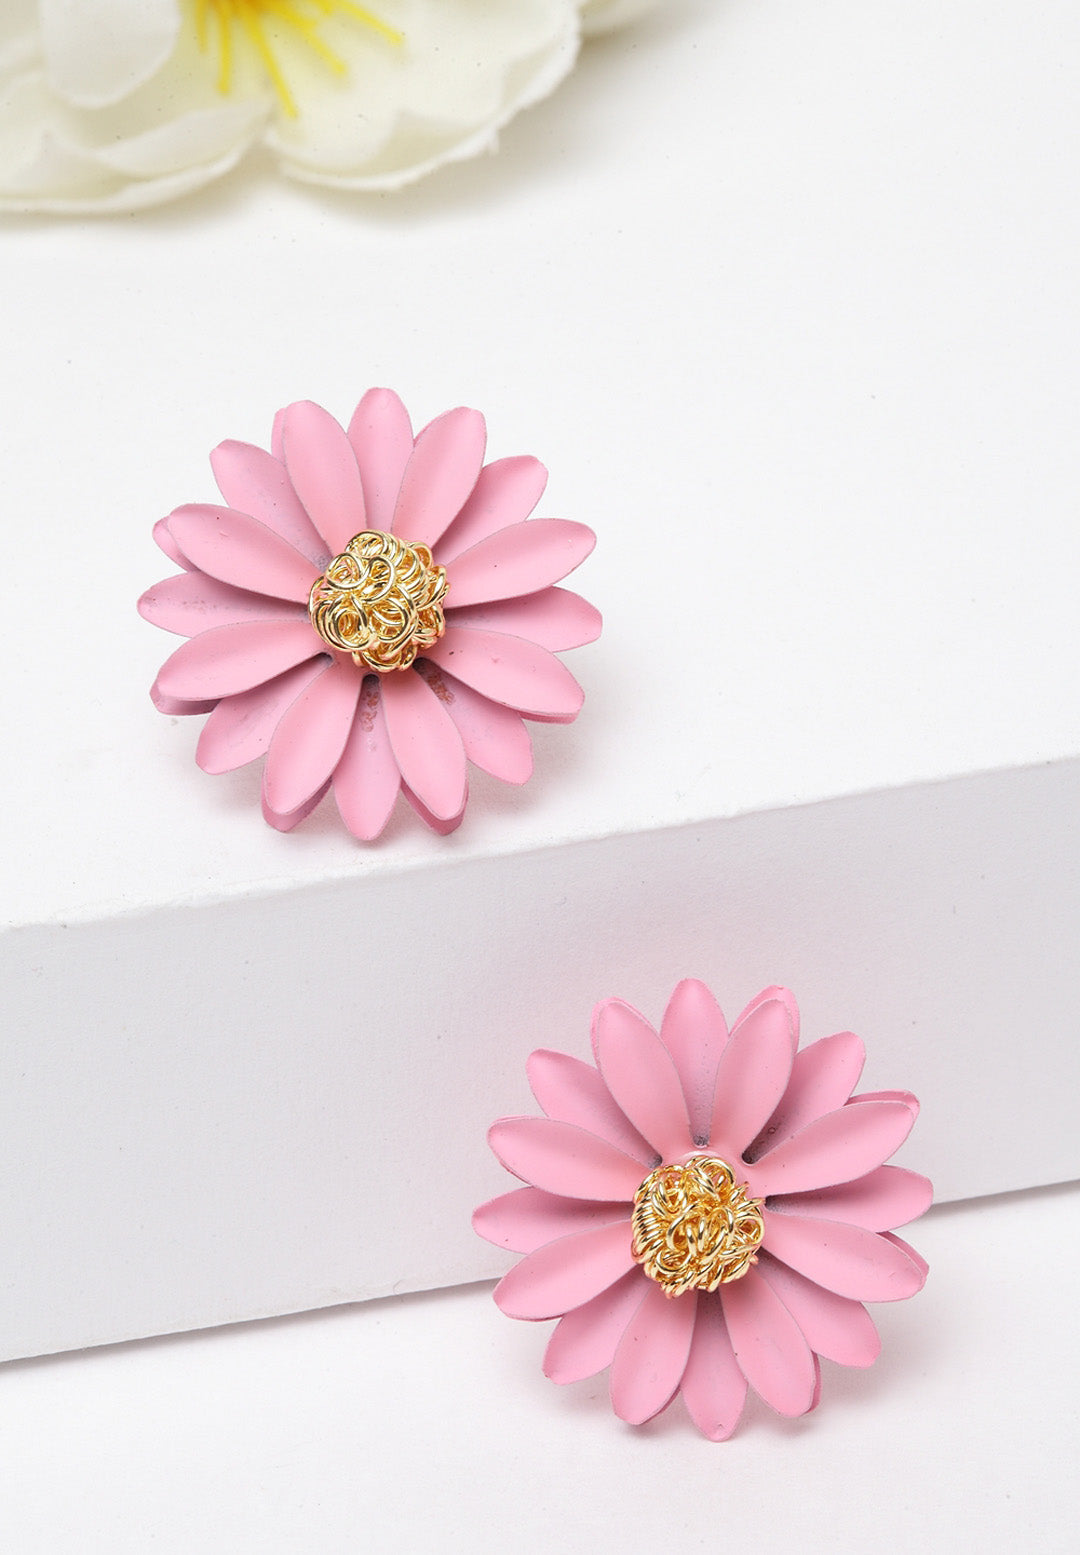 Avant-Garde Paris Flower Stud Earrings